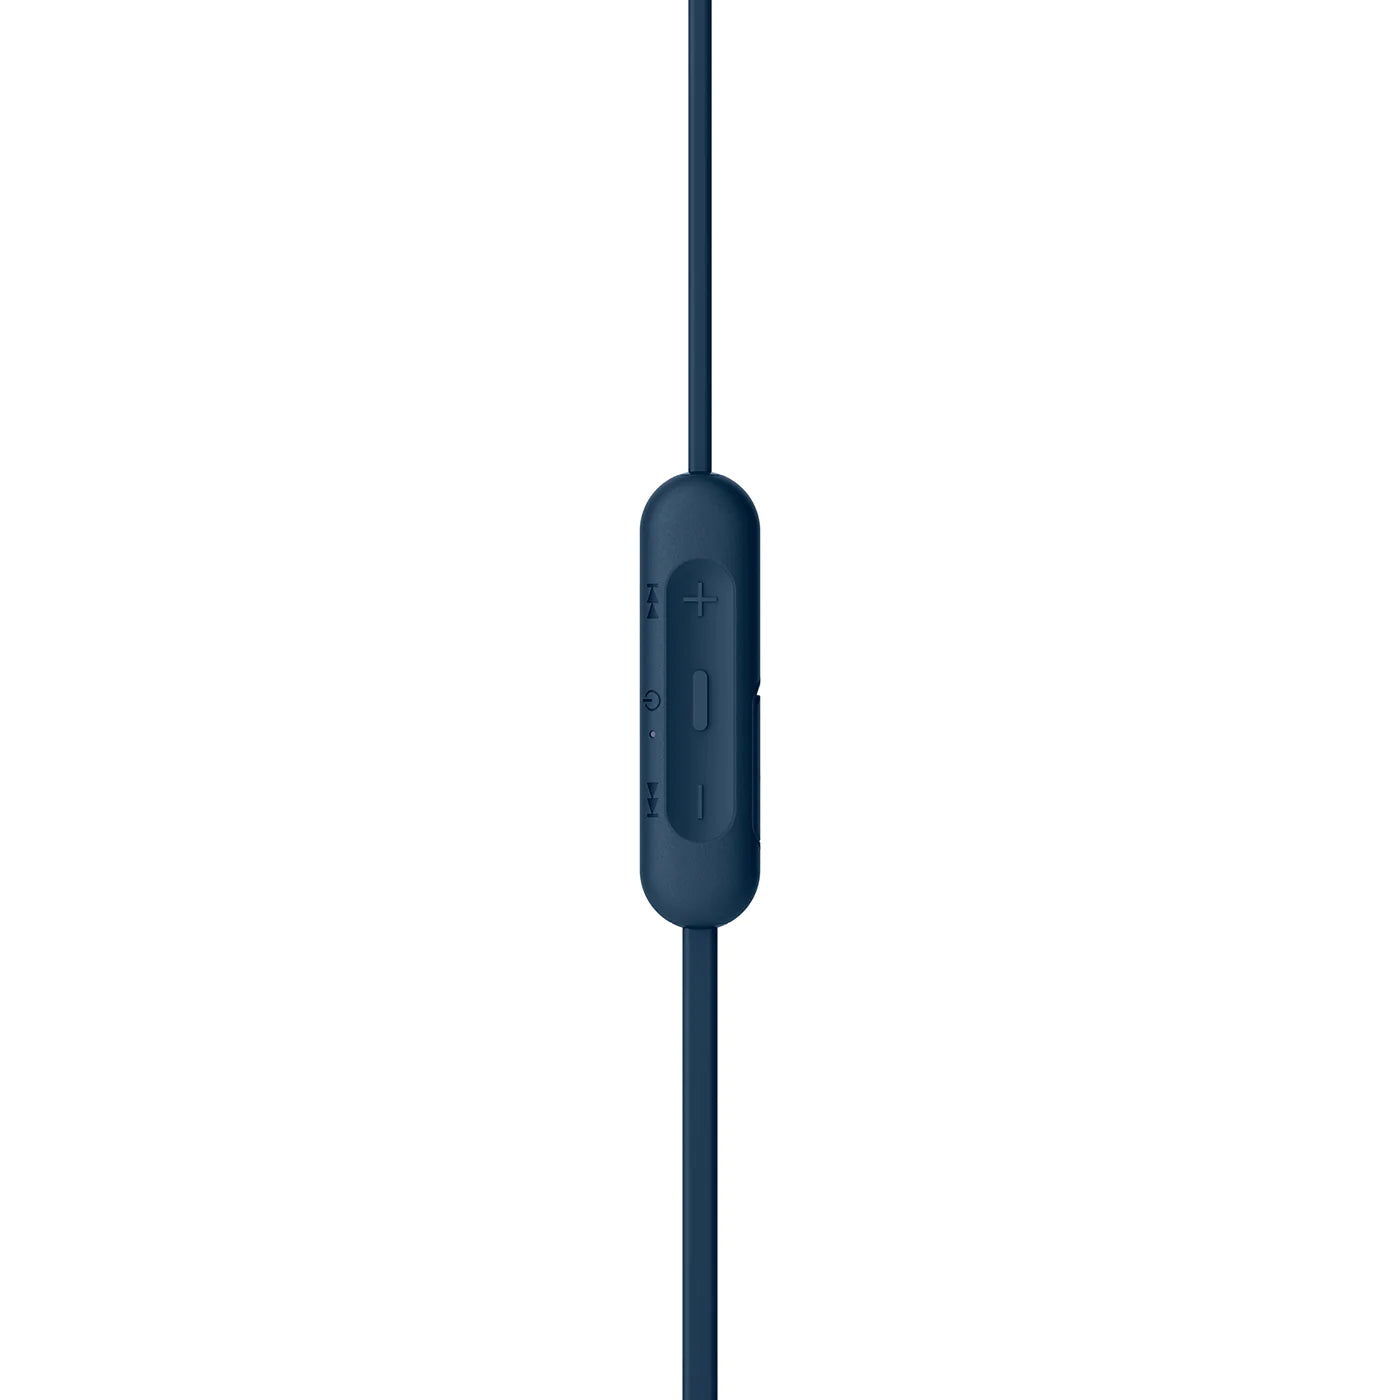 Sony WI-XB400 Wireless Bluetooth Headphone with Mic